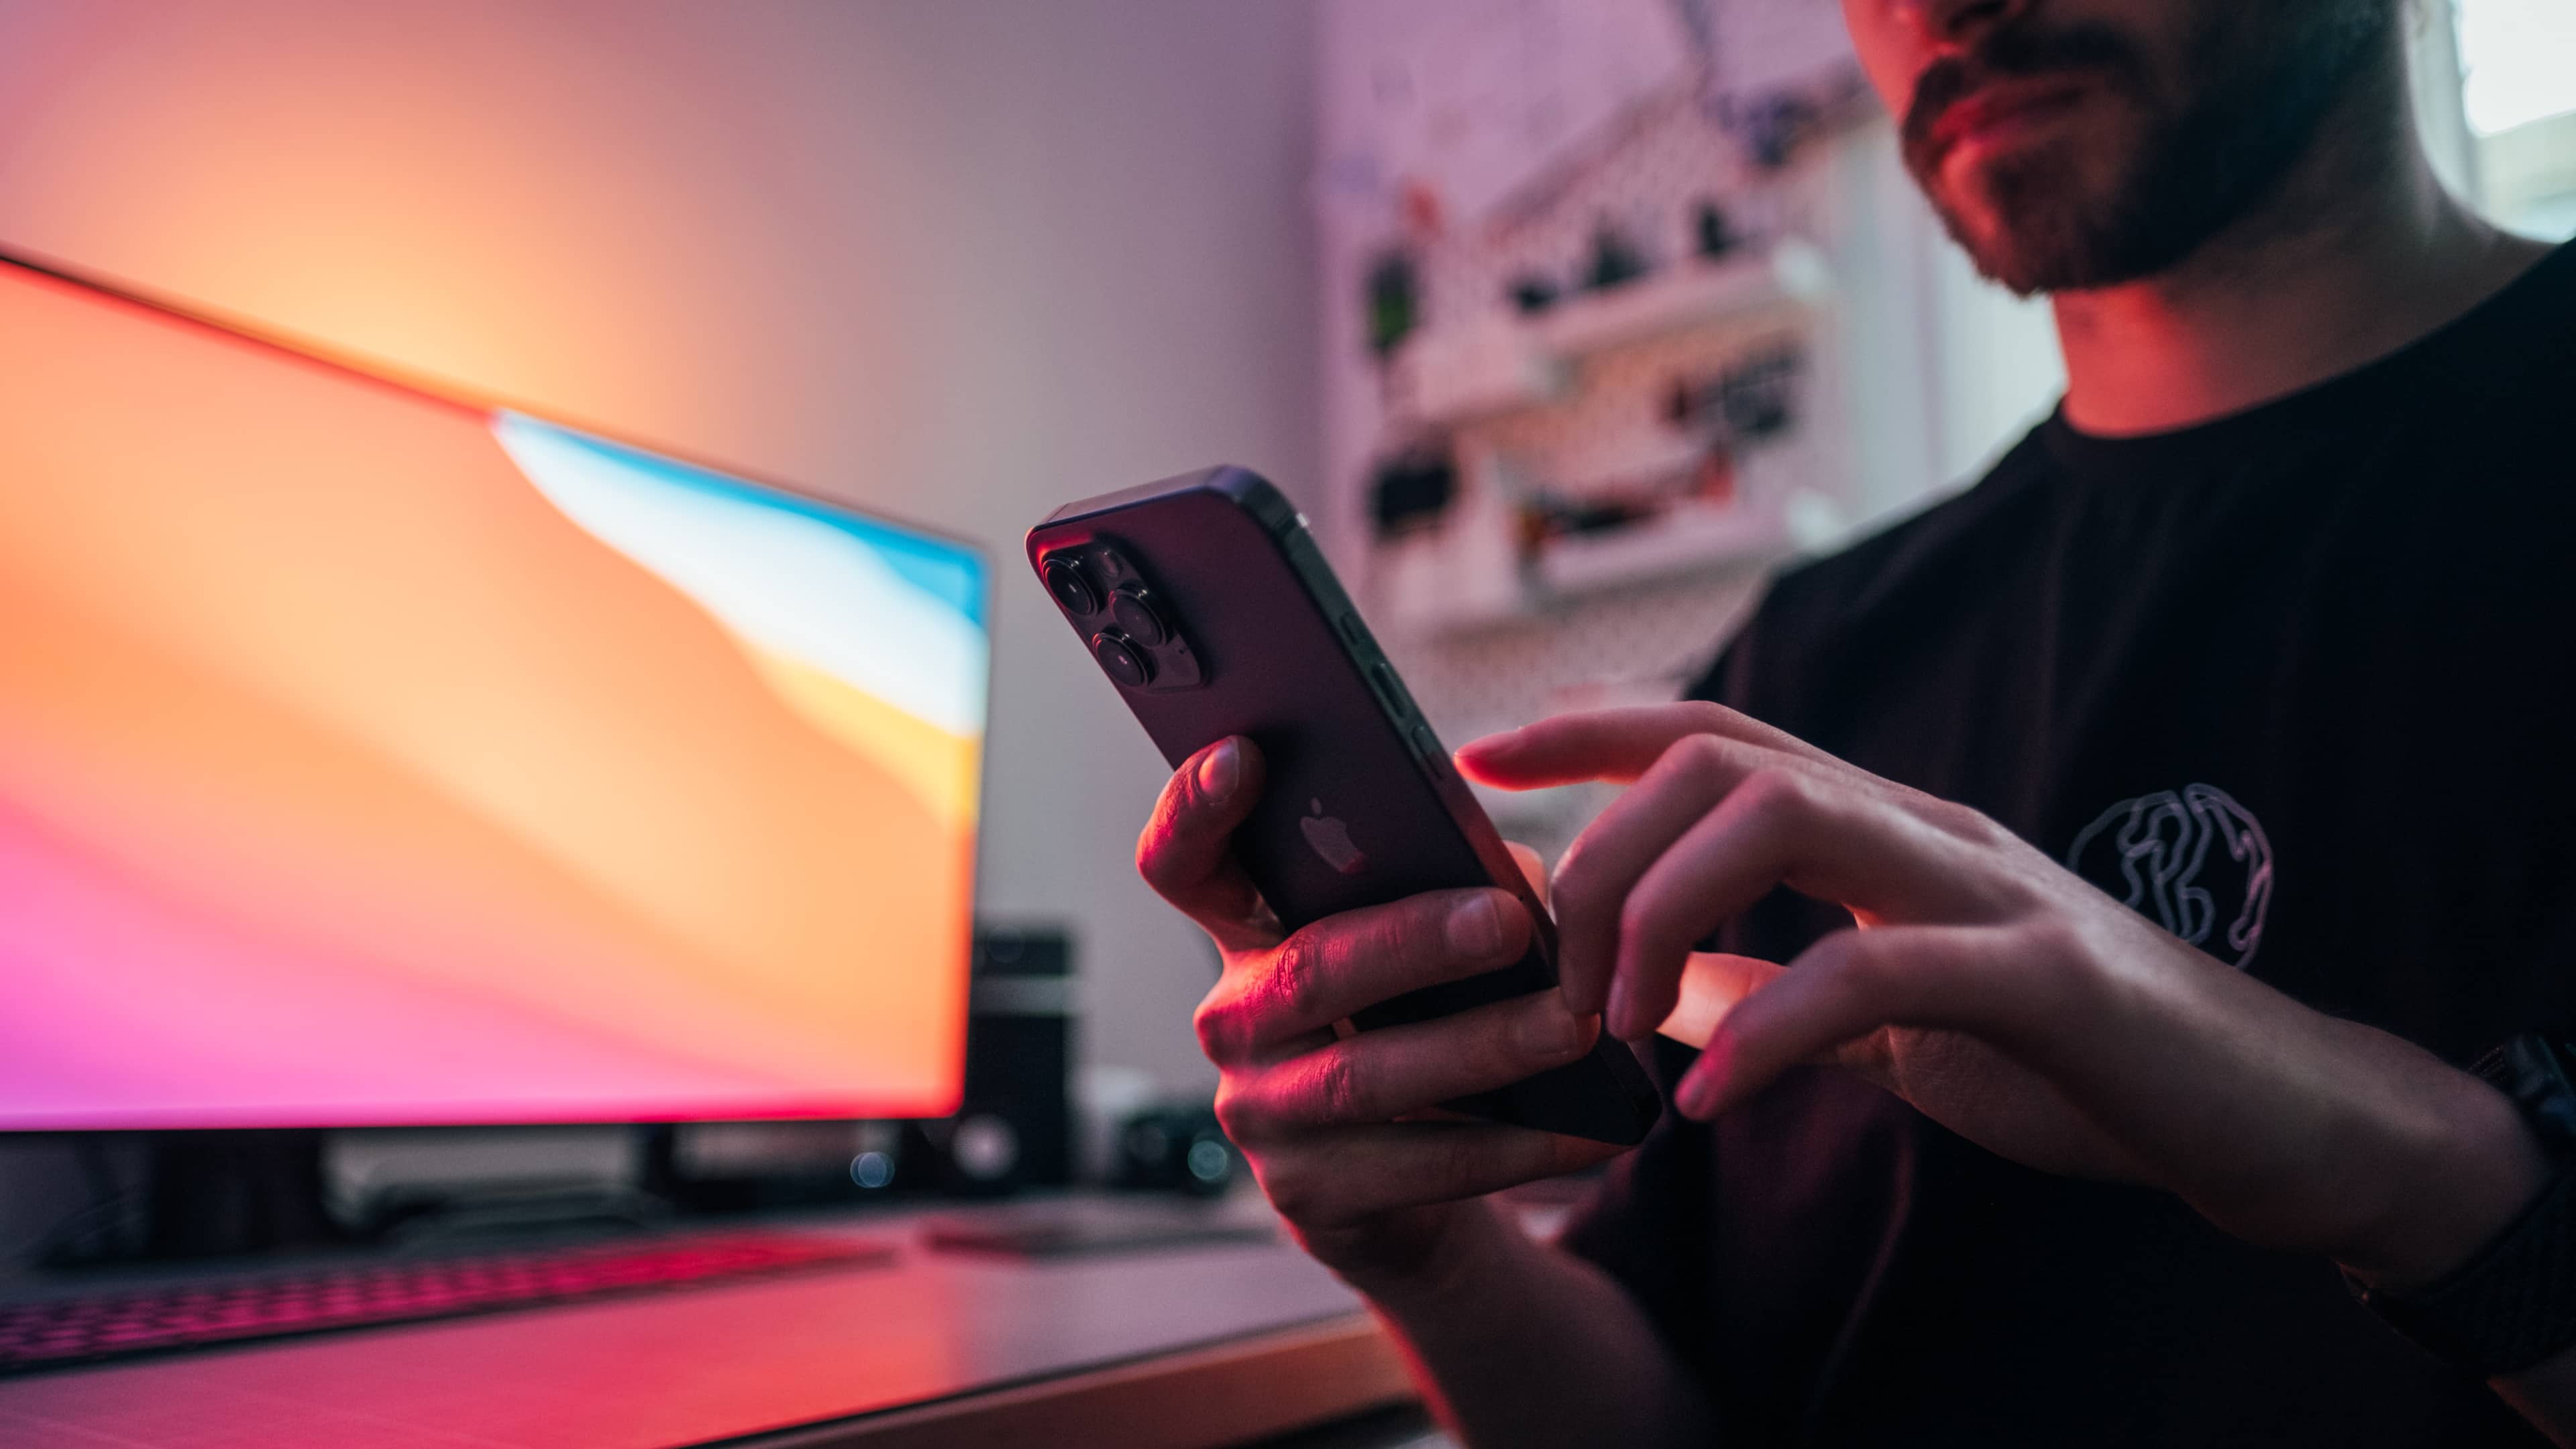 Ein junger Mann hält ein iPhone 12 Pro Max vor seinem Schreibtisch.  Im Hintergrund ist ein Monitor mit Big Sur-Hintergrundbild und einer raumgrauen Apple-Tastatur und einem Trackpad zu sehen